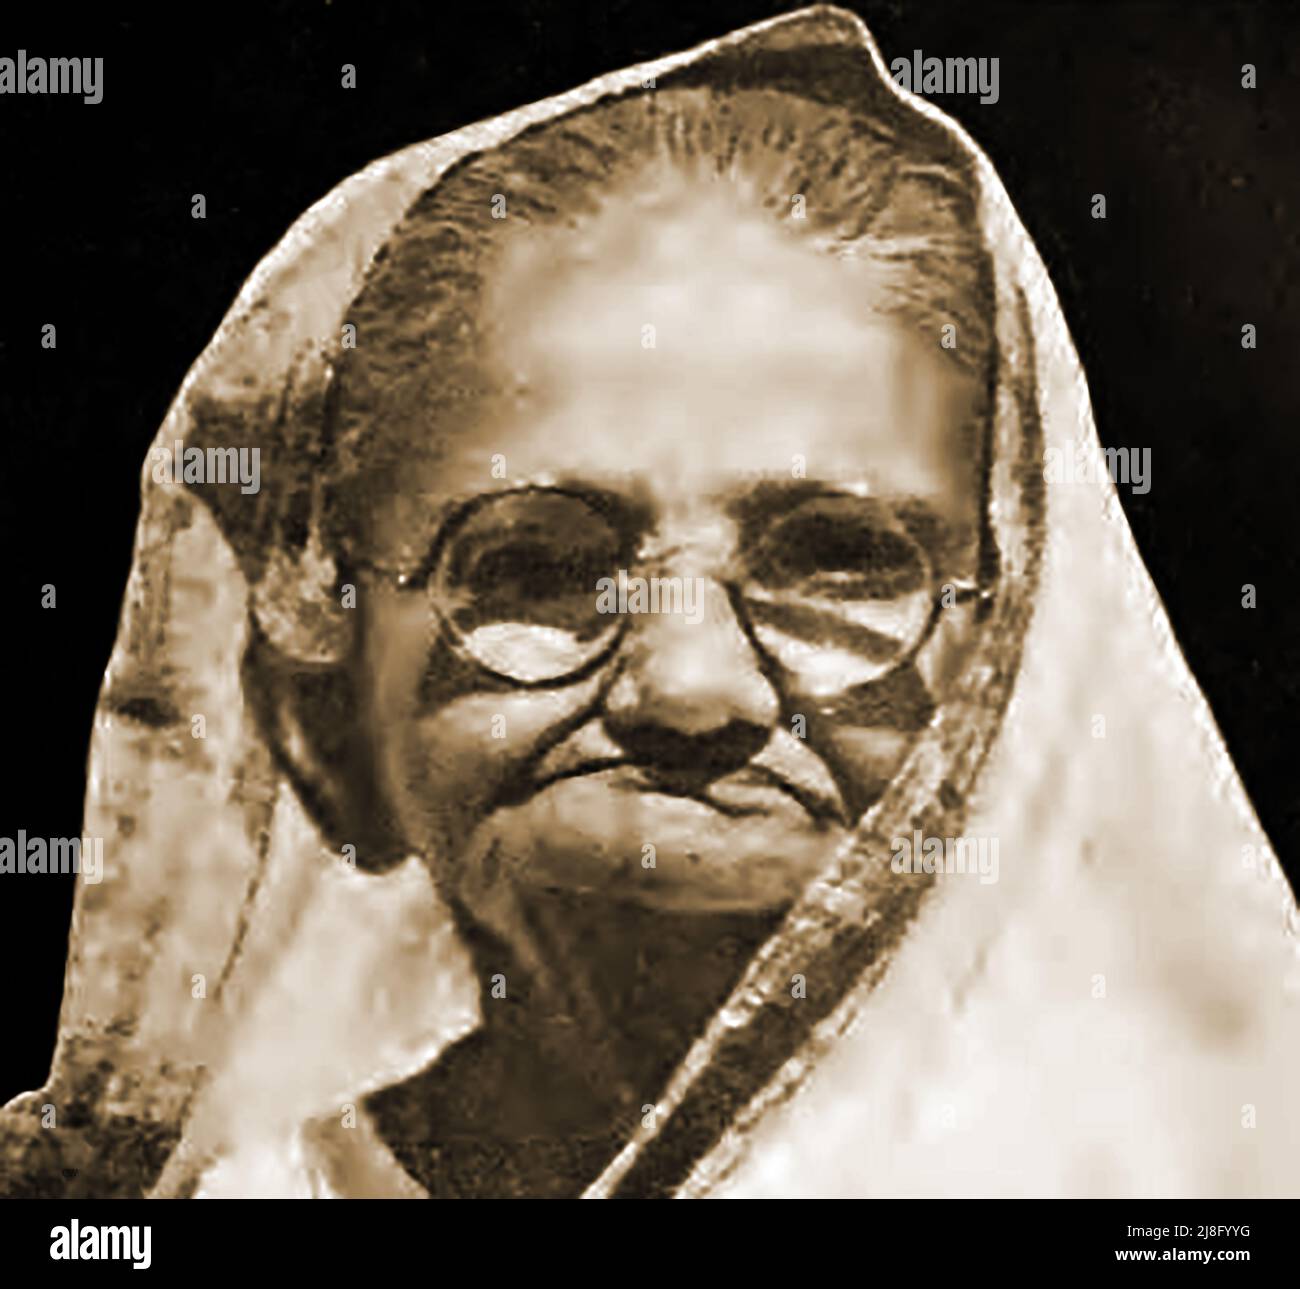 Un portrait de Faiva ou Gokibehn, la sœur aînée de Mahatma Ghandi ( nom réel Raliatbehn ) 1862-1960. Le nom Faiva signifie optimiste, faiseur de paix, ou gai ainsi peut avoir été un surnom utilisé par la famille ou Ghandi lui-même. Certaines sources la répertorient comme Raliat Gandhi---- Faiva का एक प्रारंभिक चित्र, महात्मा गांधी की बहन कहा जाता है Banque D'Images